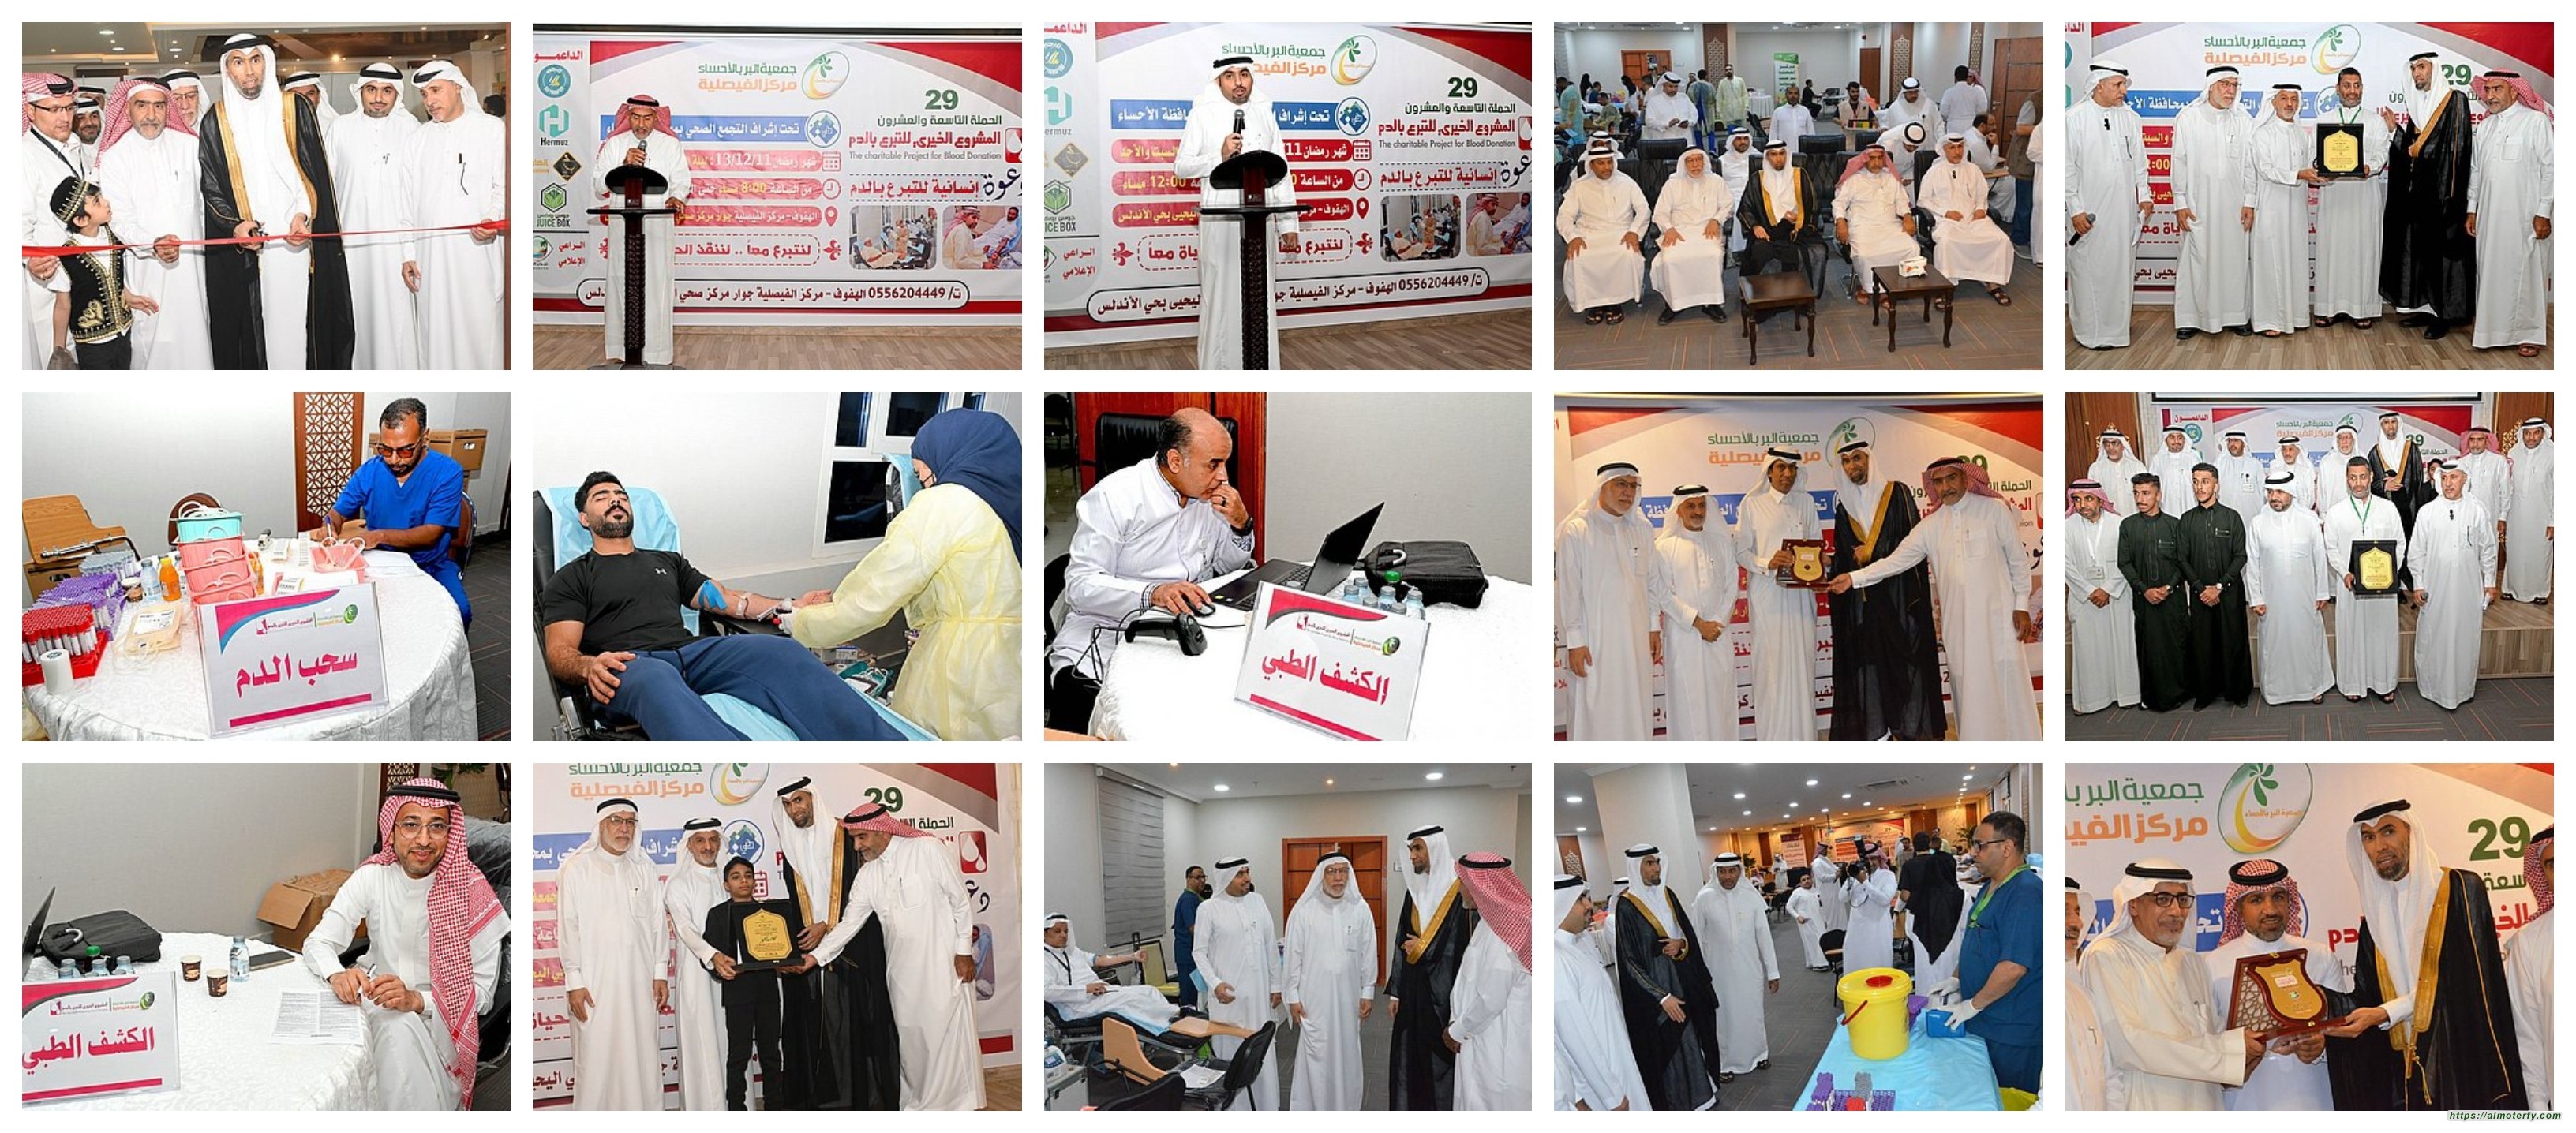 108 حصيلة اليوم الأول لحملة التبرع بالدم في بر الفيصلية